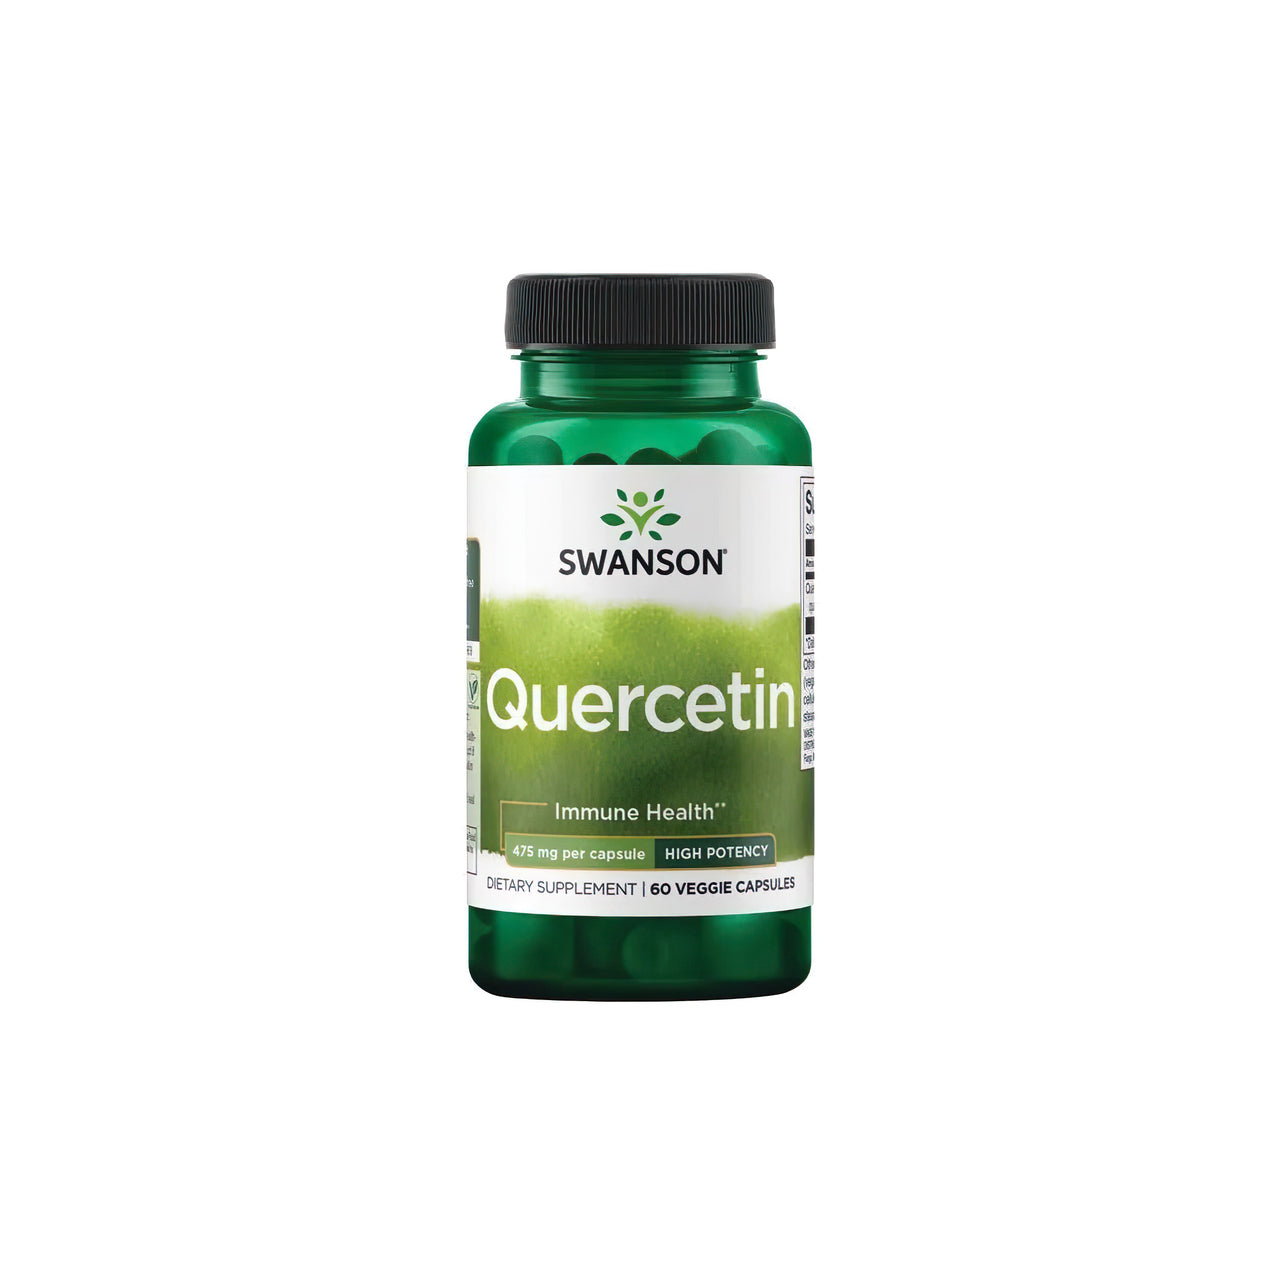 Um frasco de Swanson Quercetin 475 mg 60 vcaps, um poderoso antioxidante para o sistema imunitário, sobre um fundo branco.